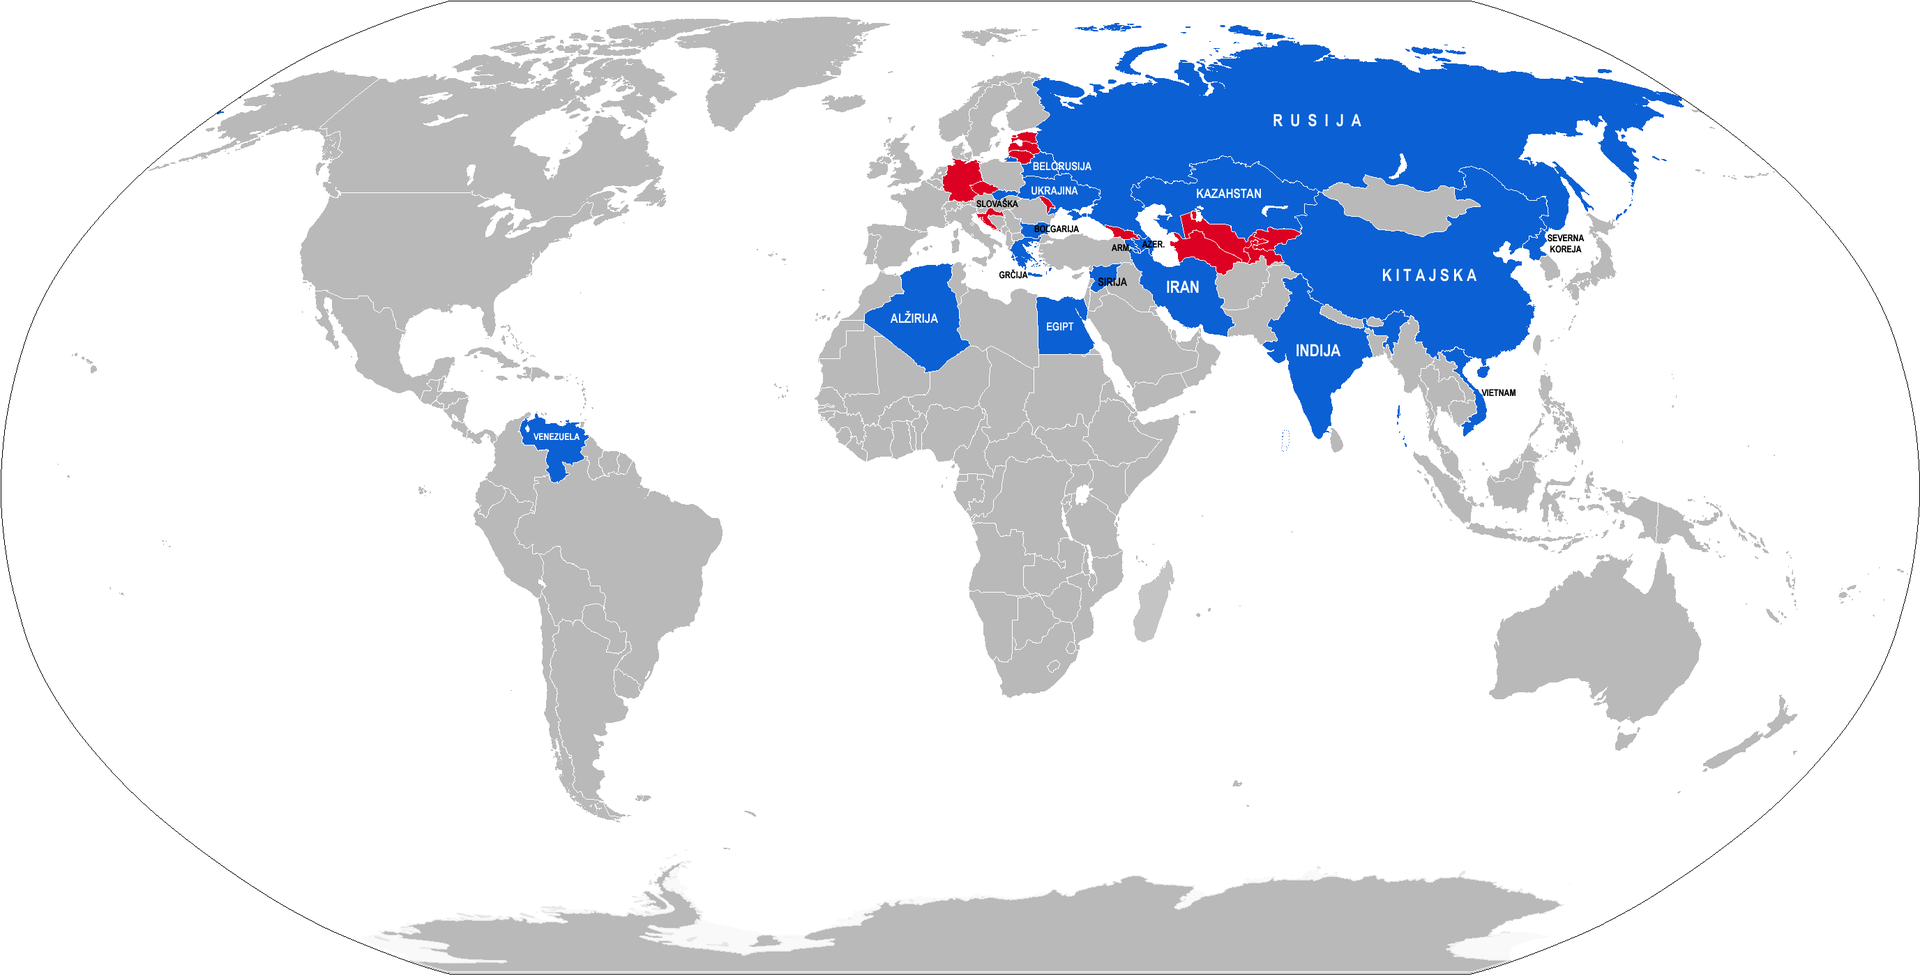 Trenutni uporabniki sistema S-300 (modra) in nekdanji uporabniki (rdeča)